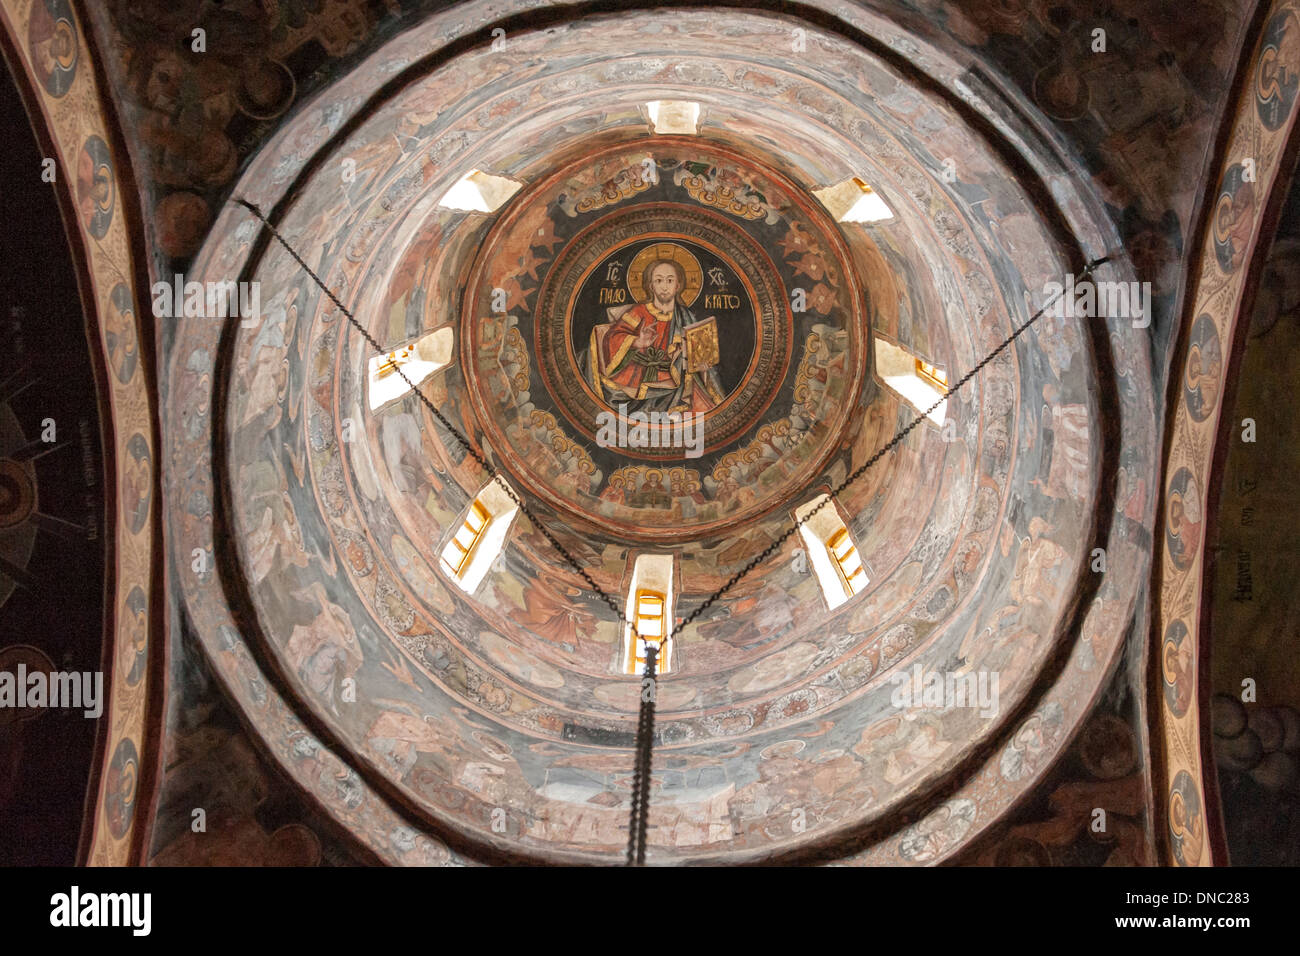 Vista interior del techo y la cúpula de la antigua iglesia (Biserica Veche) en el monasterio de Sinaia, en el condado de Prahova, Rumania. Foto de stock